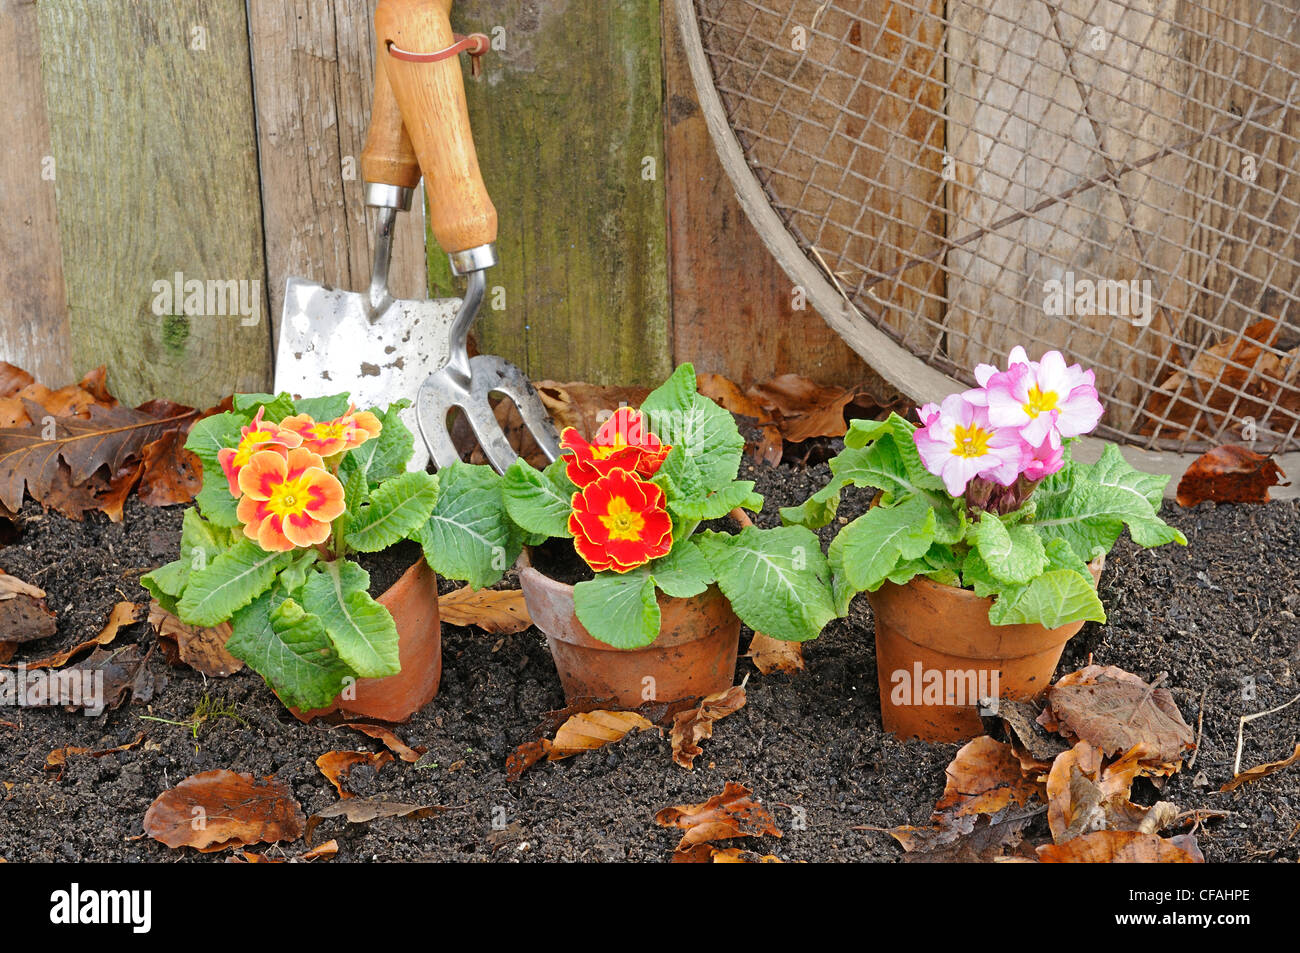 Rustico giardino primavera scena con primule, vasi di terracotta e attrezzi da giardino. Foto Stock